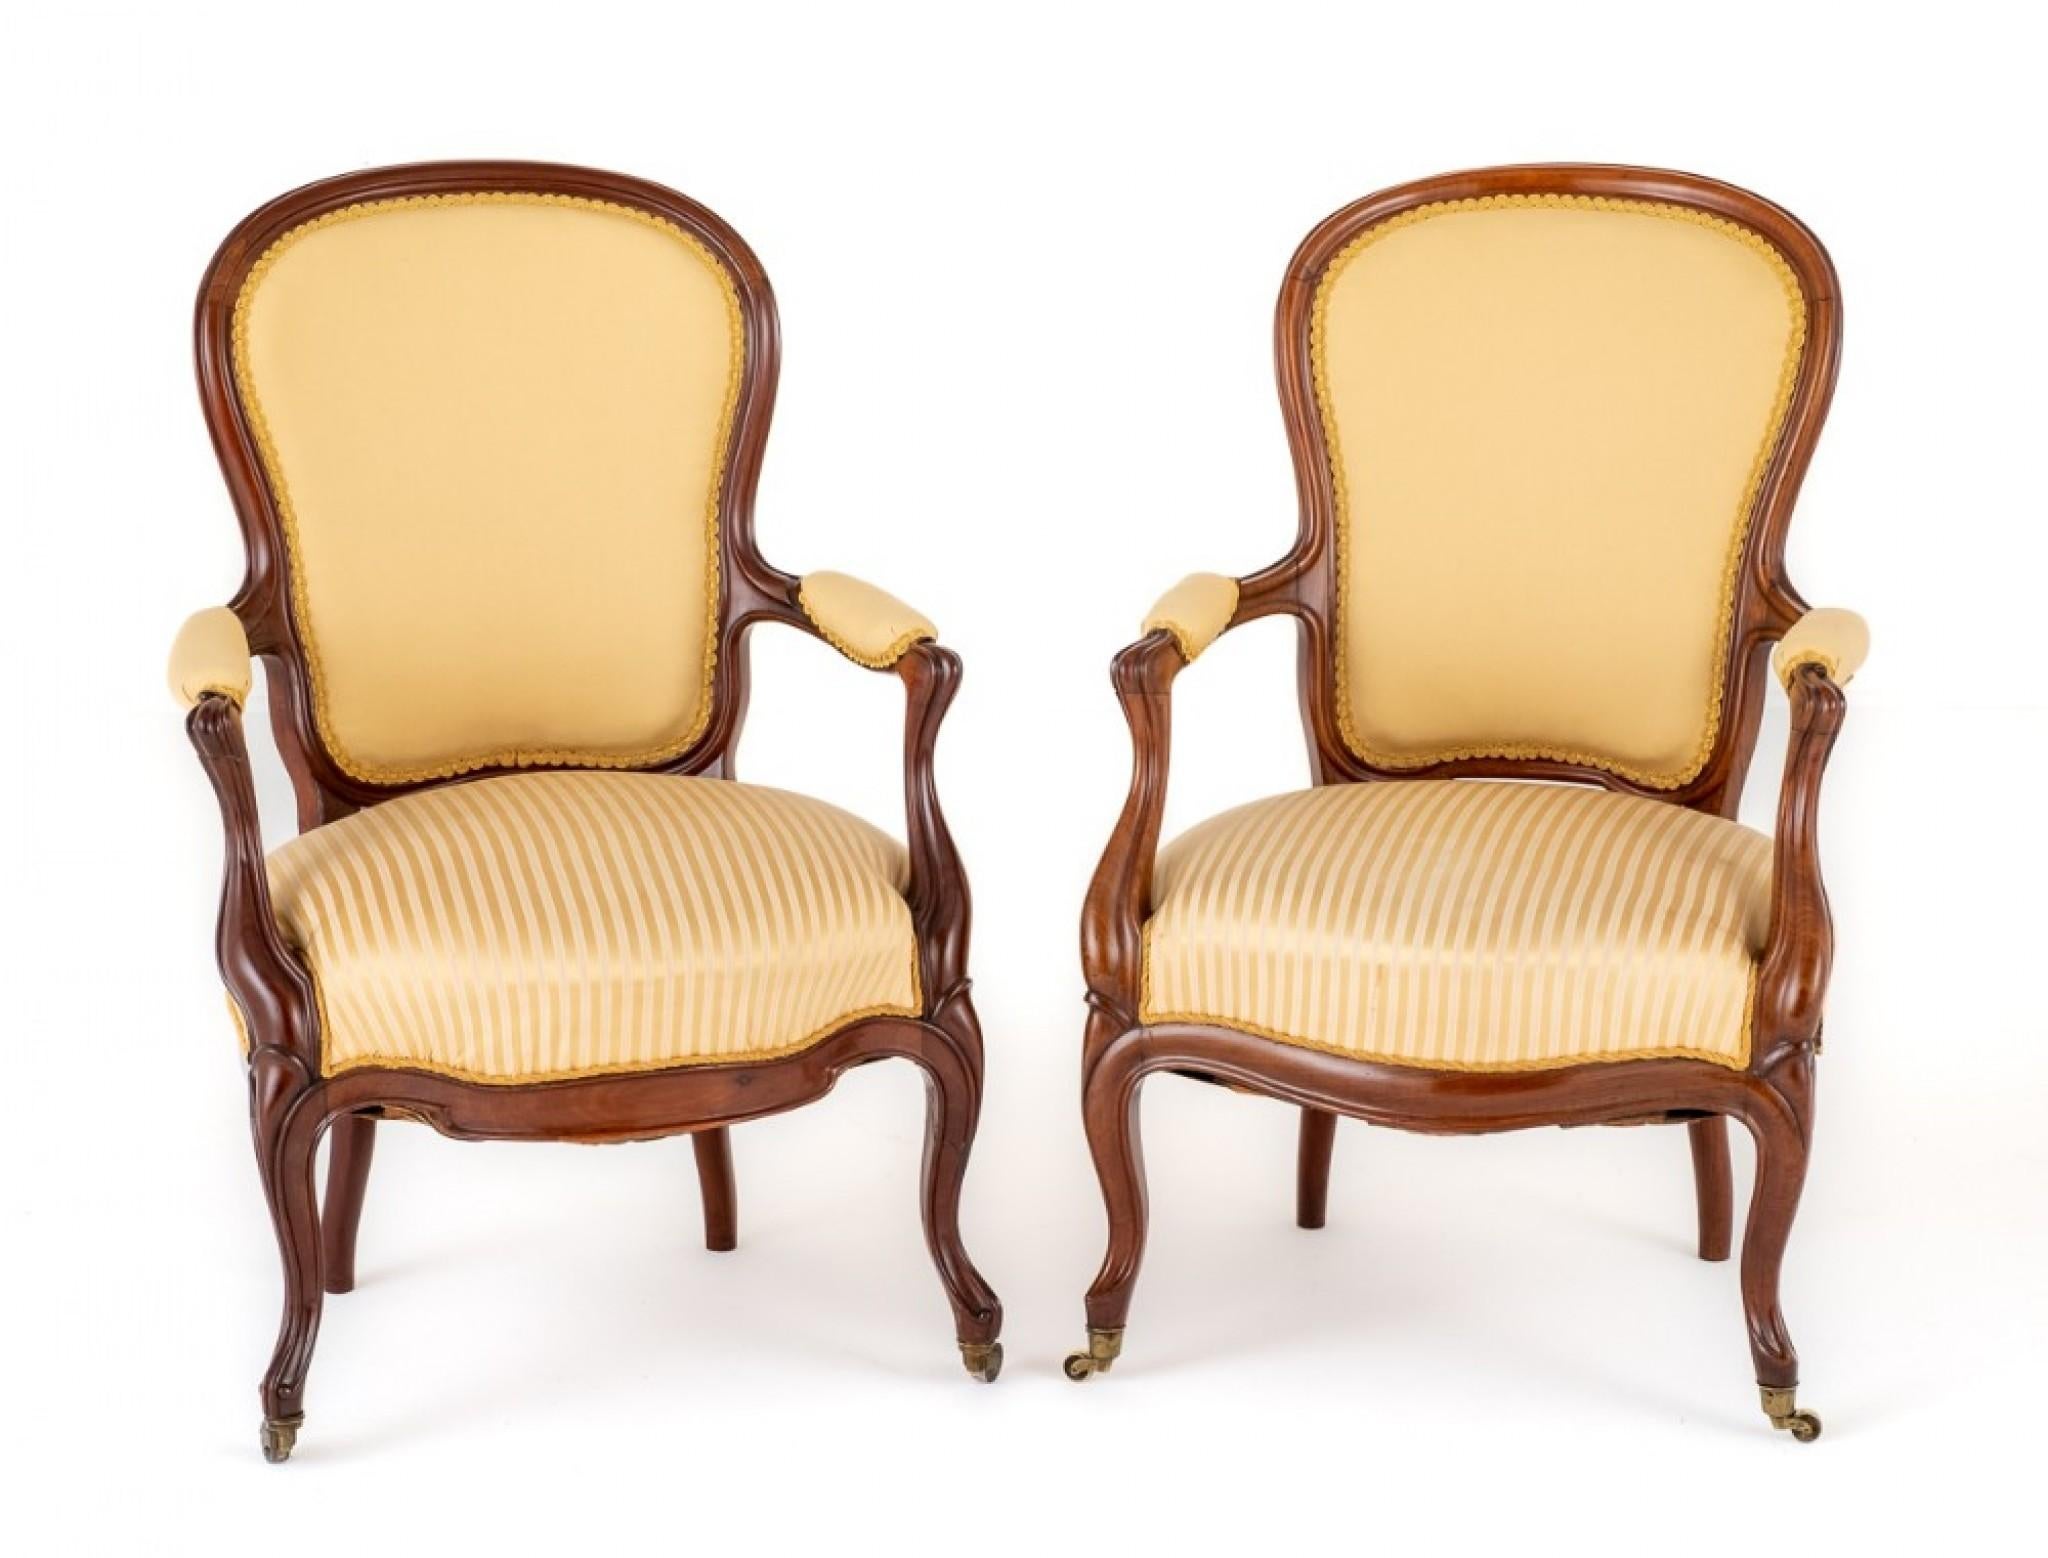 Zwei offene Sessel aus viktorianischem Palisanderholz.
Erhöht auf Cabriole Vorderbeine mit Messing Rollen und gefegt zurück Beine.
CIRCA 1870
Mit einer geformten Friesleiste und geschnitzten und geformten Armstützen.
Die Arme haben eine gepolsterte